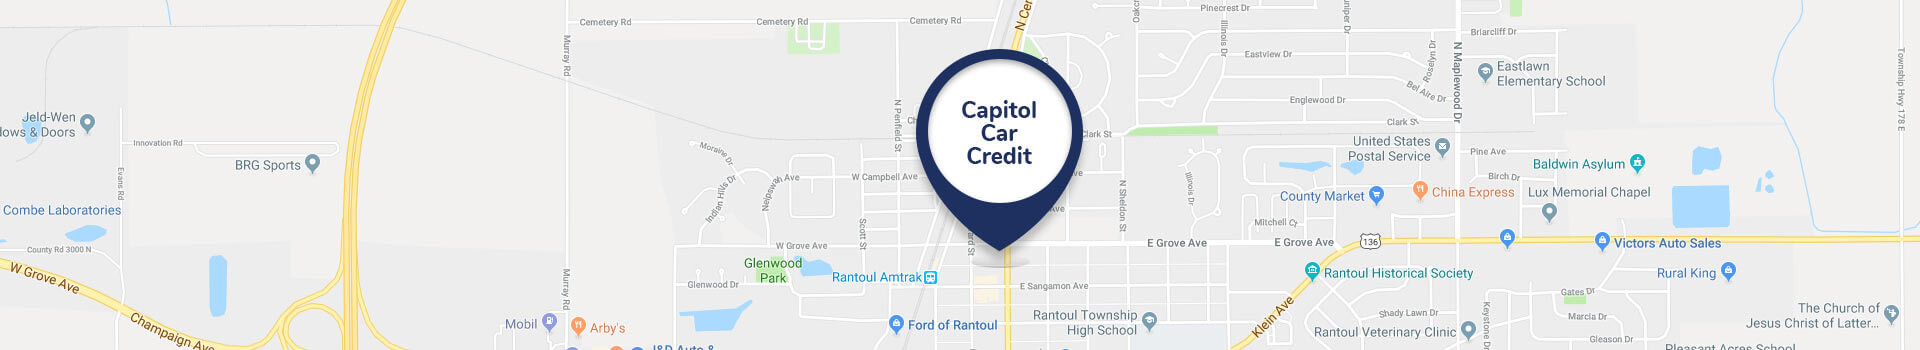 Capitol Car Credit Map